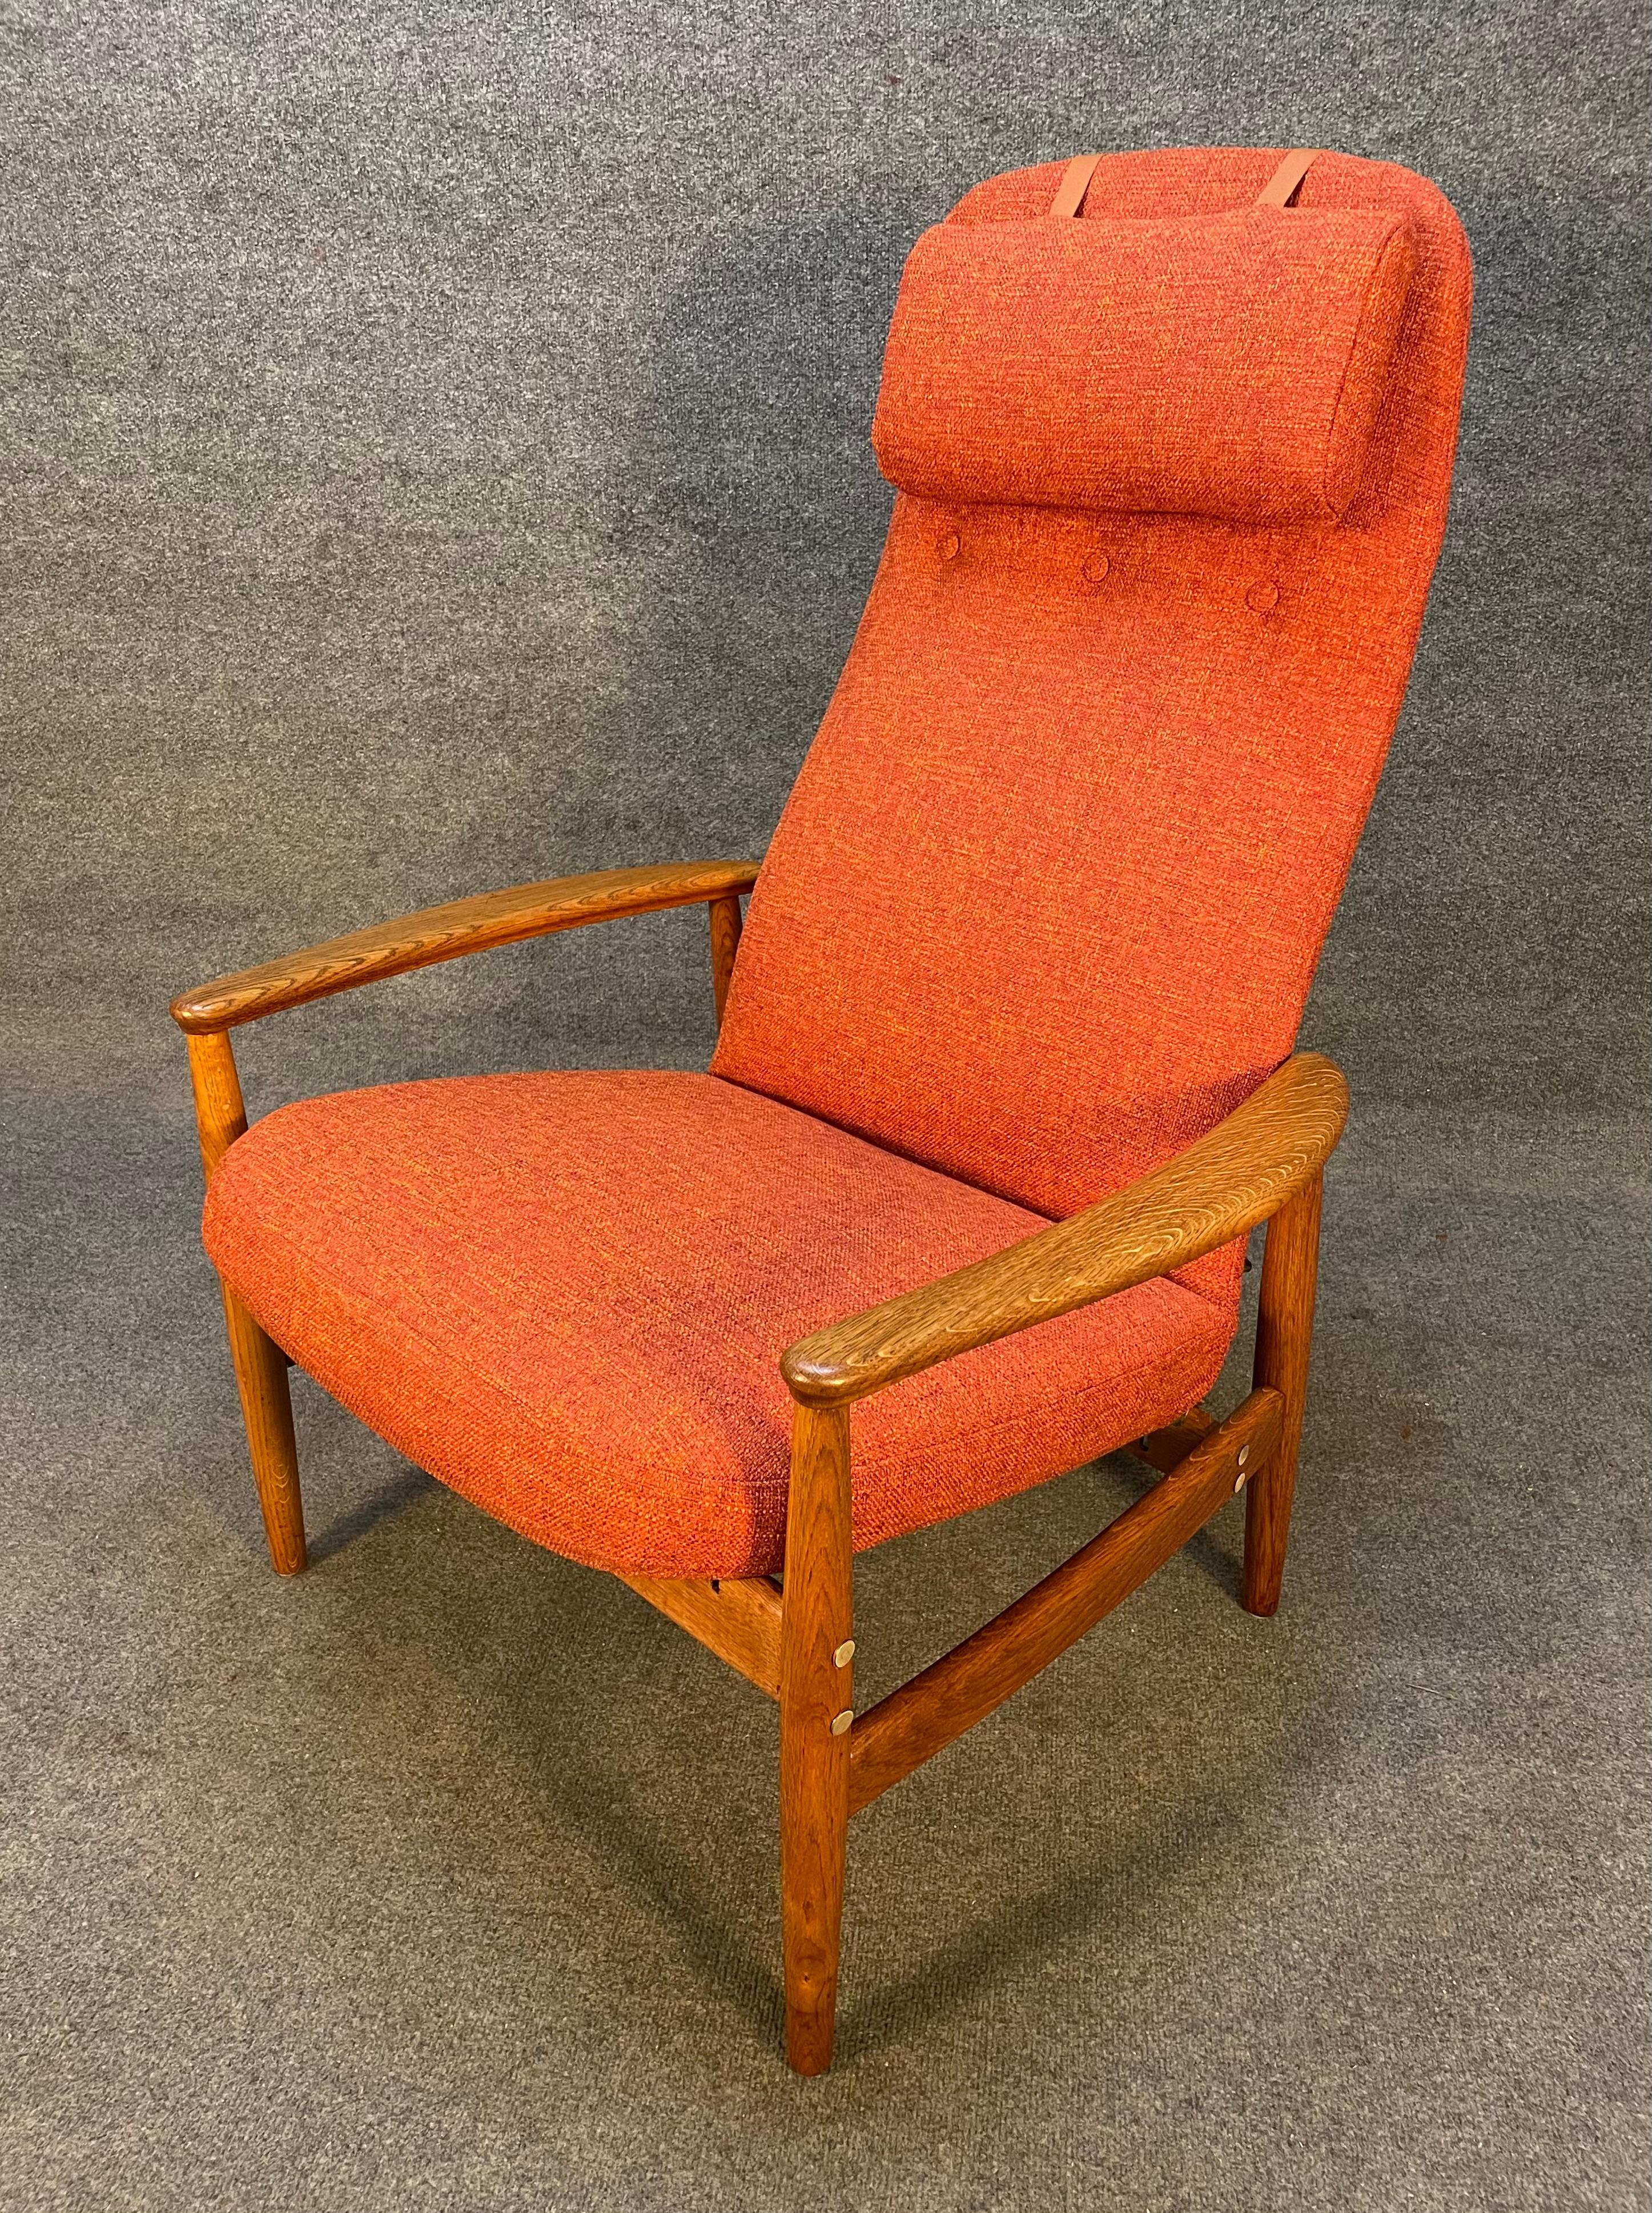 Voici une magnifique chaise longue moderne scandinave en chêne modèle 